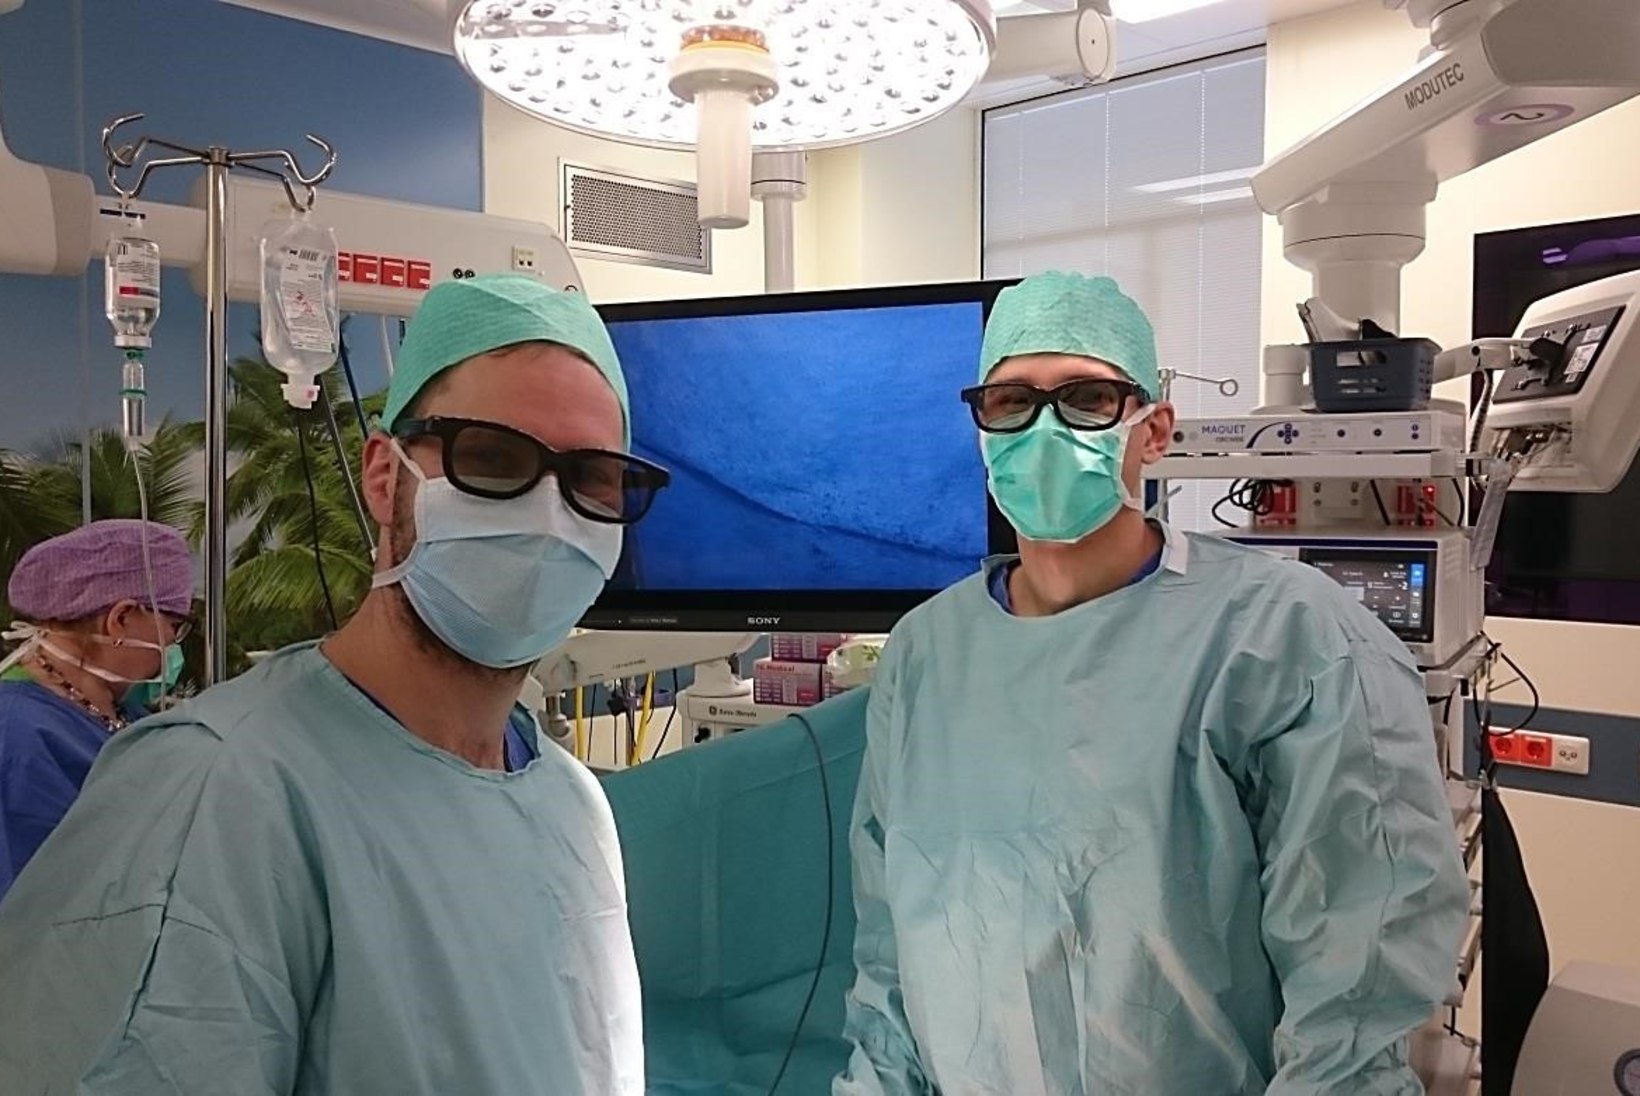 Uus 3D-laparoskoopia aparaat teeb opereerimise täpsemaks ja kiiremaks